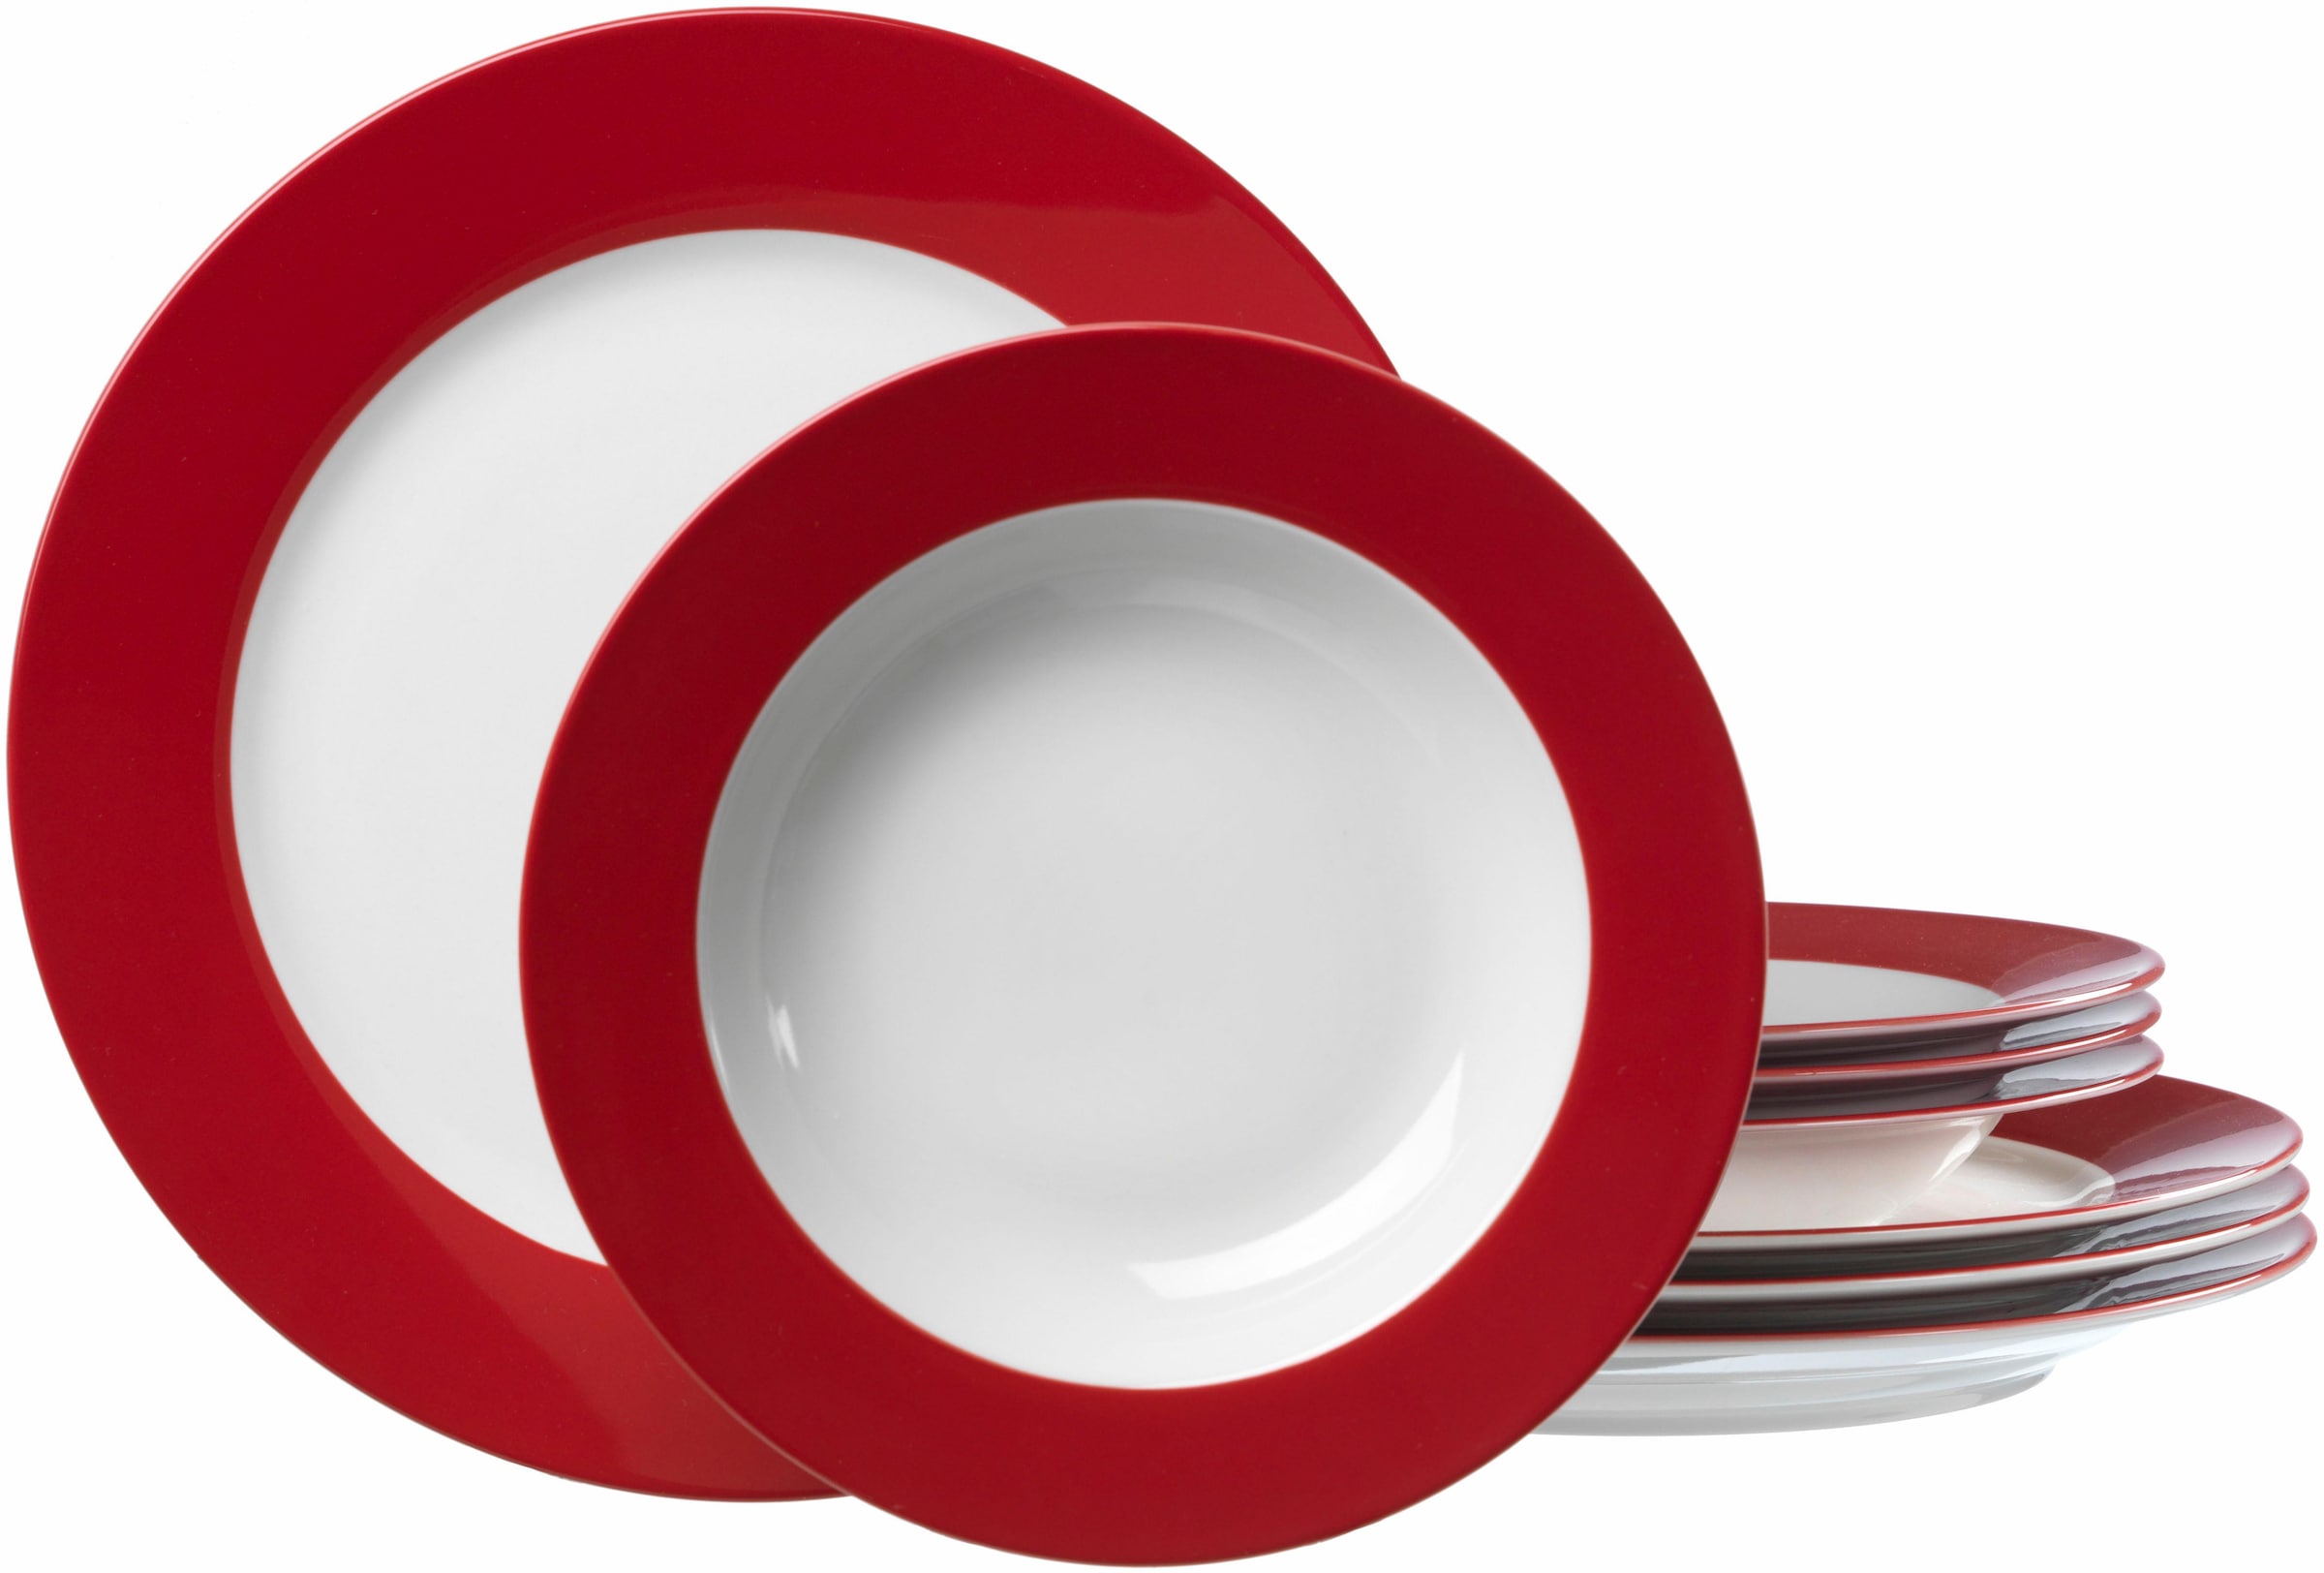 Geschirr & Porzellan in Rot Universal Raten günstig ▻ kaufen auf